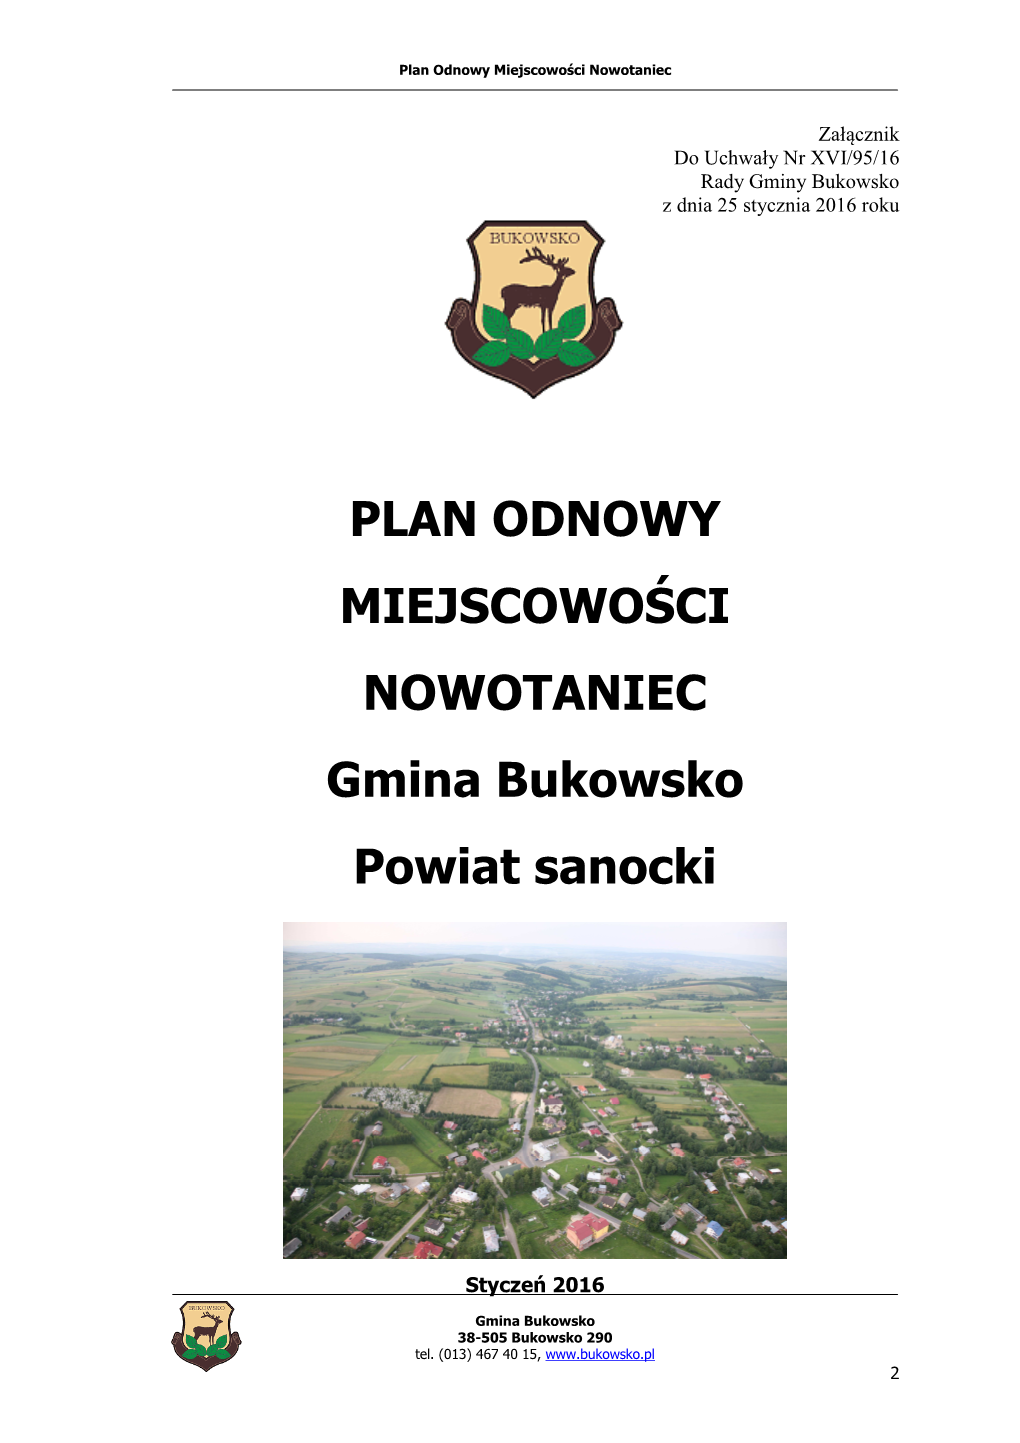 PLAN ODNOWY MIEJSCOWOŚCI NOWOTANIEC Gmina Bukowsko Powiat Sanocki